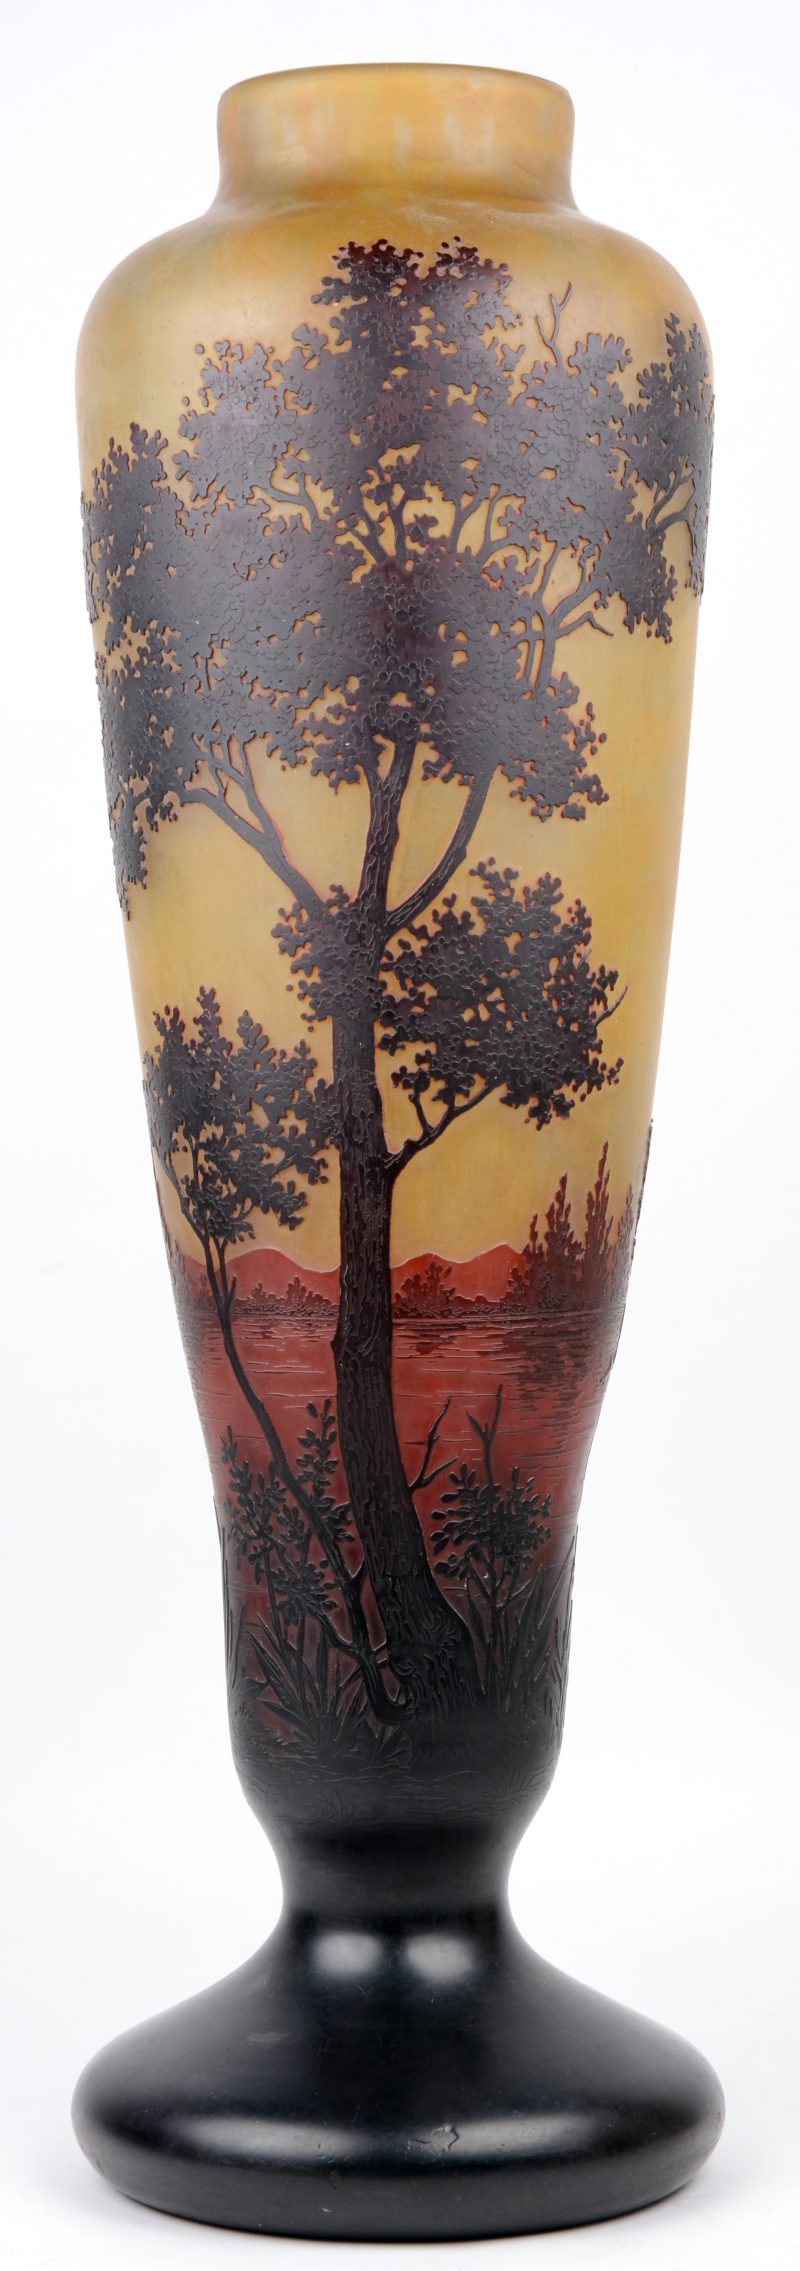 Een grote glazen vaas met een met het wiel gegraveerd landschapsdecor op een oranjebruine achtergrond, eindigend in een donkere voet. Voluit gemerkt en met het kruis van Lotharingen. Begin XXe eeuw.